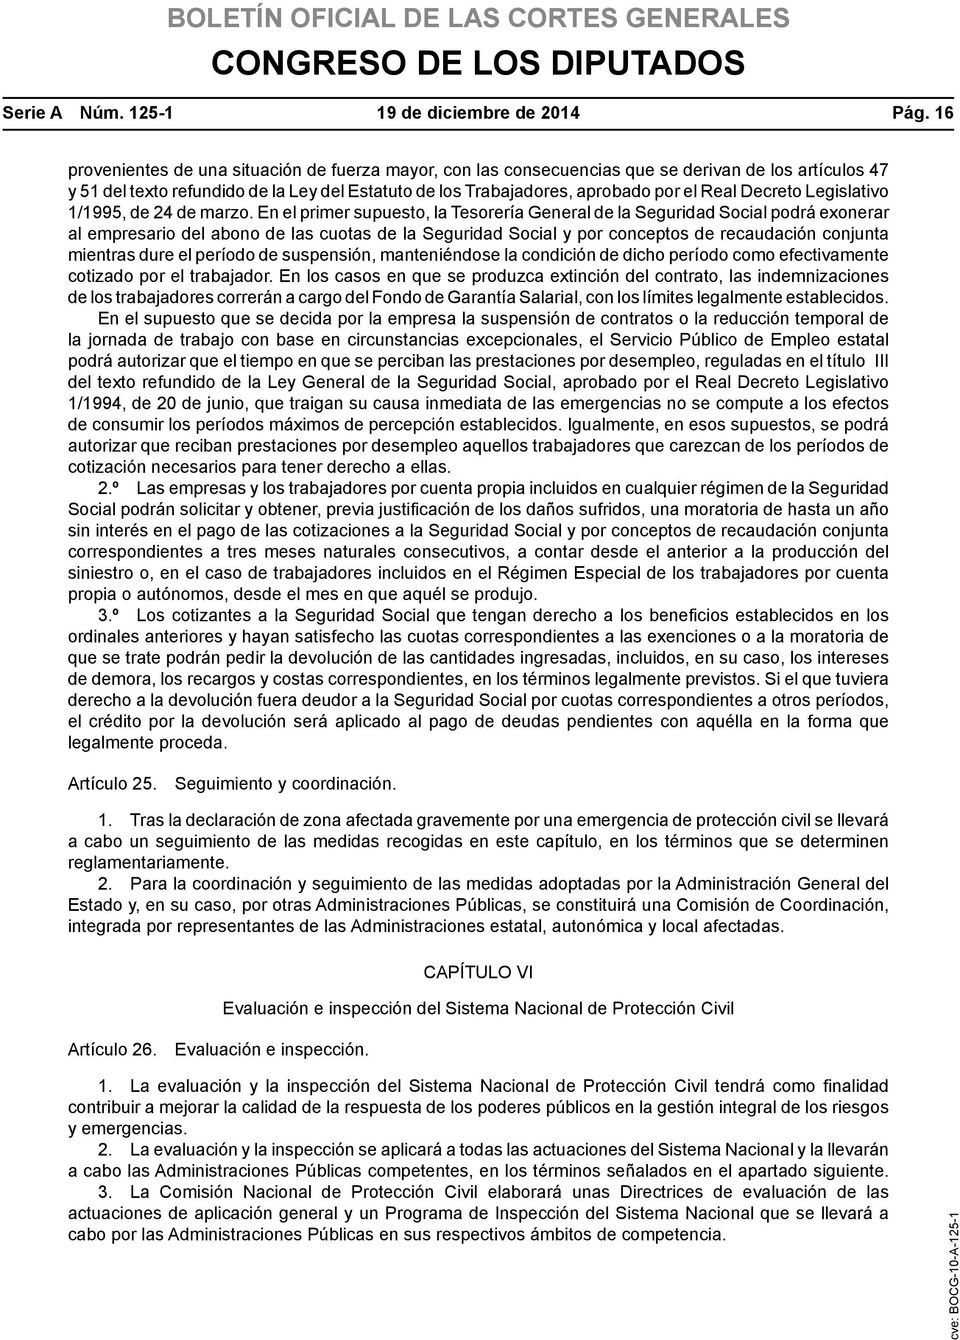 Decreto Legislativo 1/1995, de 24 de marzo.